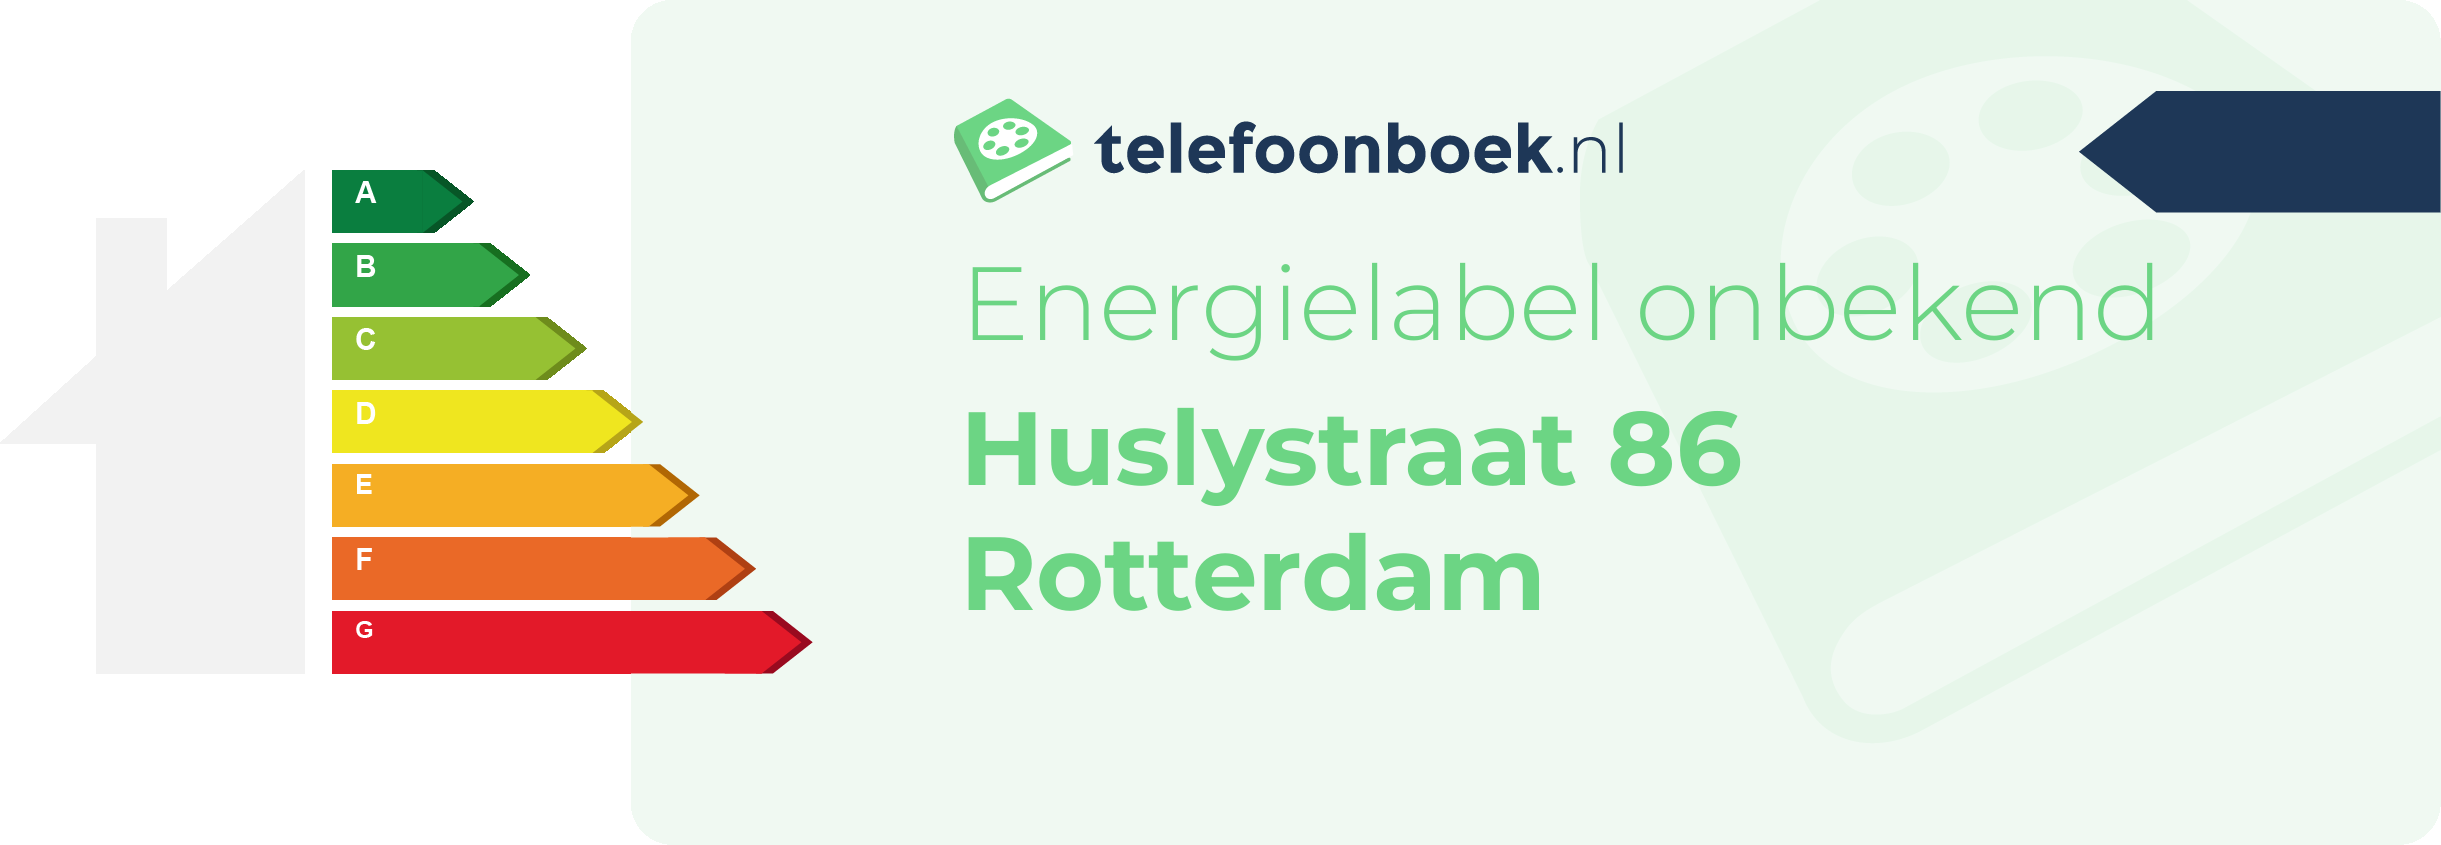 Energielabel Huslystraat 86 Rotterdam